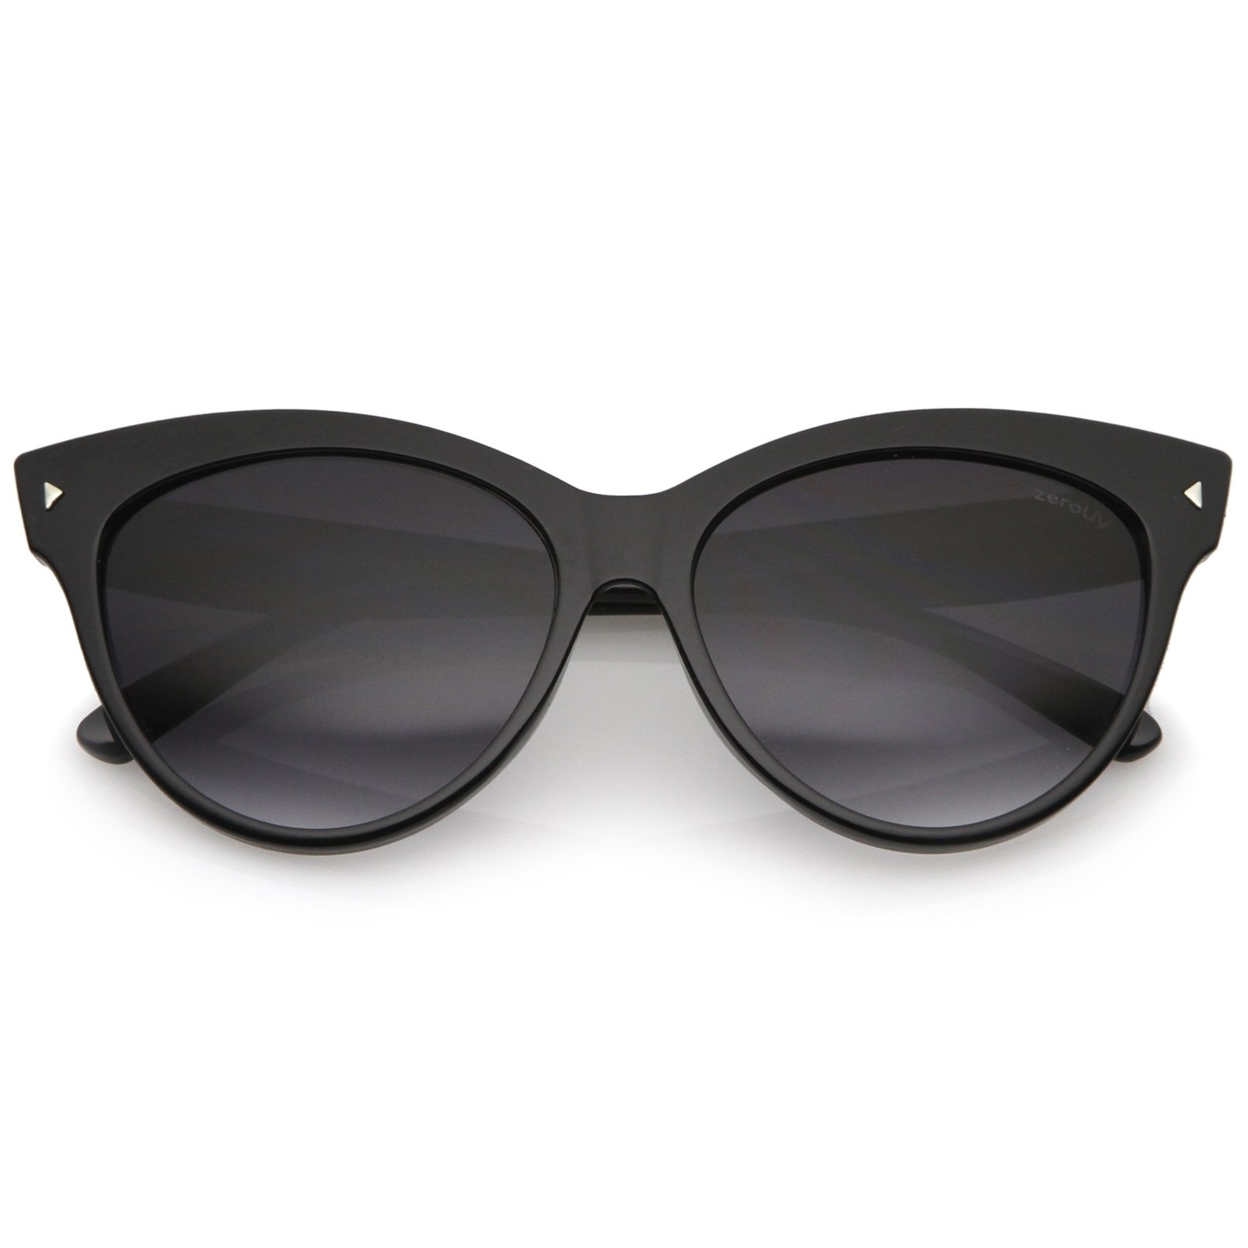 Women's Mod Oversize Horn Rimmed Cat Eye Sunglasses 52mm - Black / Lavender